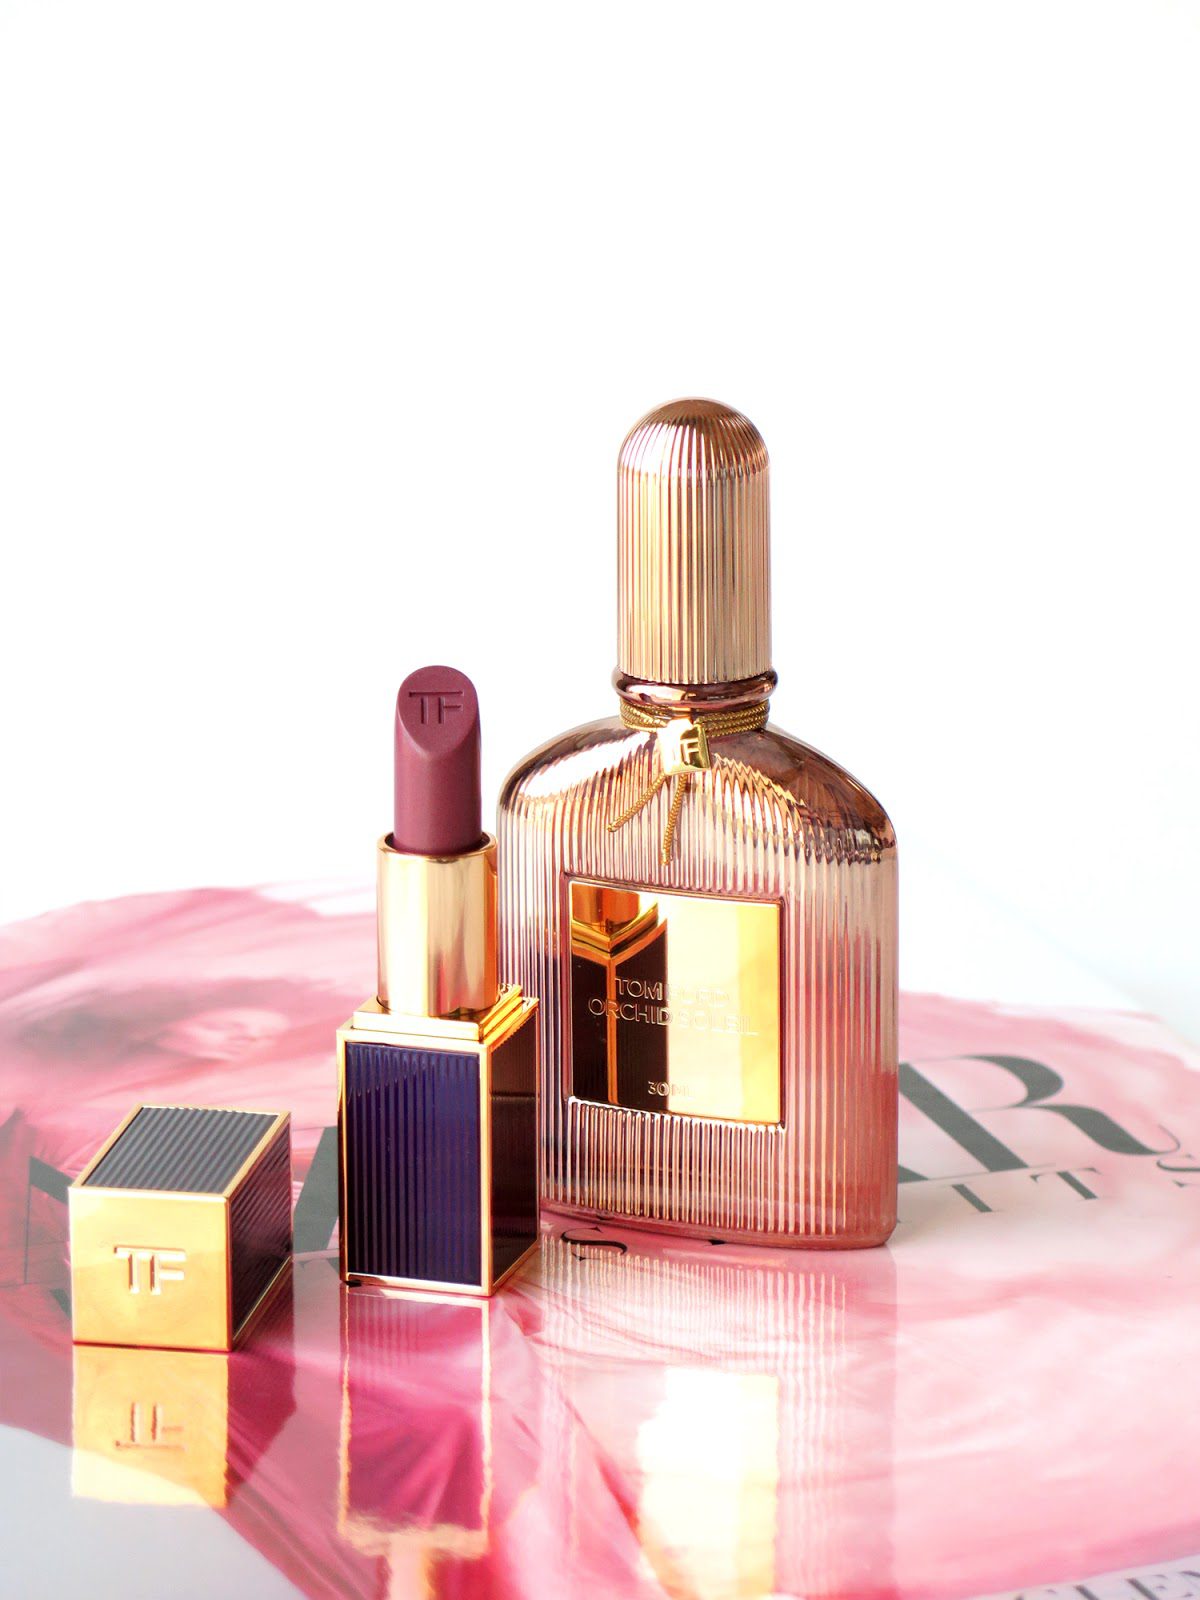 Tom Ford Beauty Velvet Orchid Lip Color and Orchid Soleil Eau de Parfum -  The Beauty Look Book